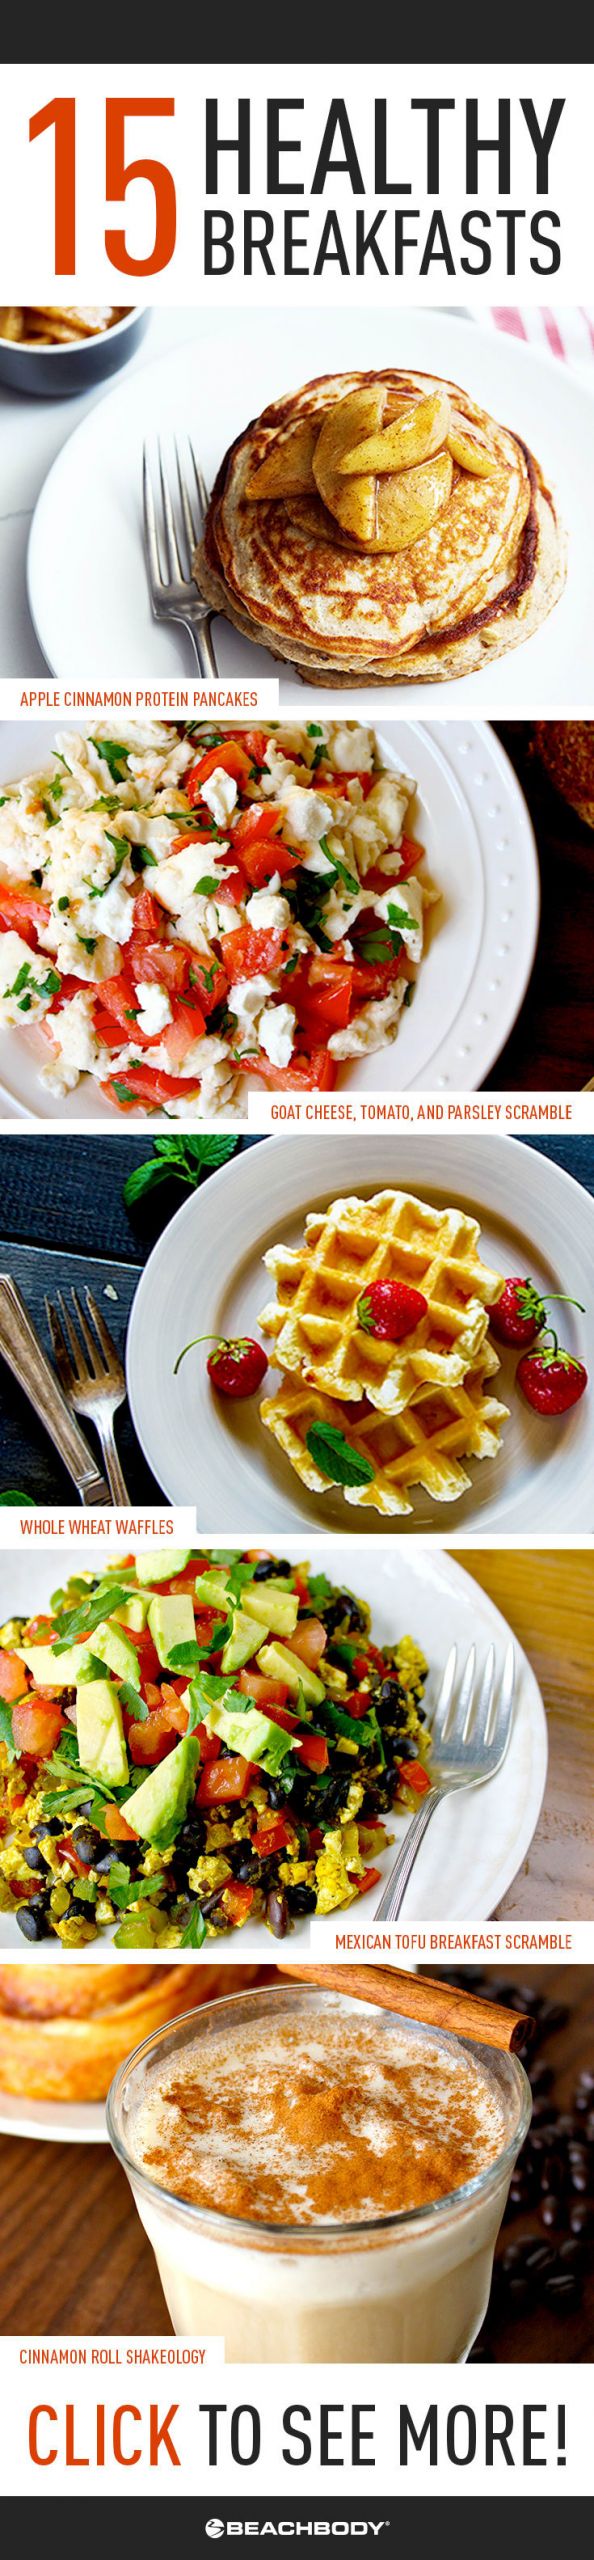 Healthy Breakfast Options
 15 Healthy Breakfast Recipe Ideas